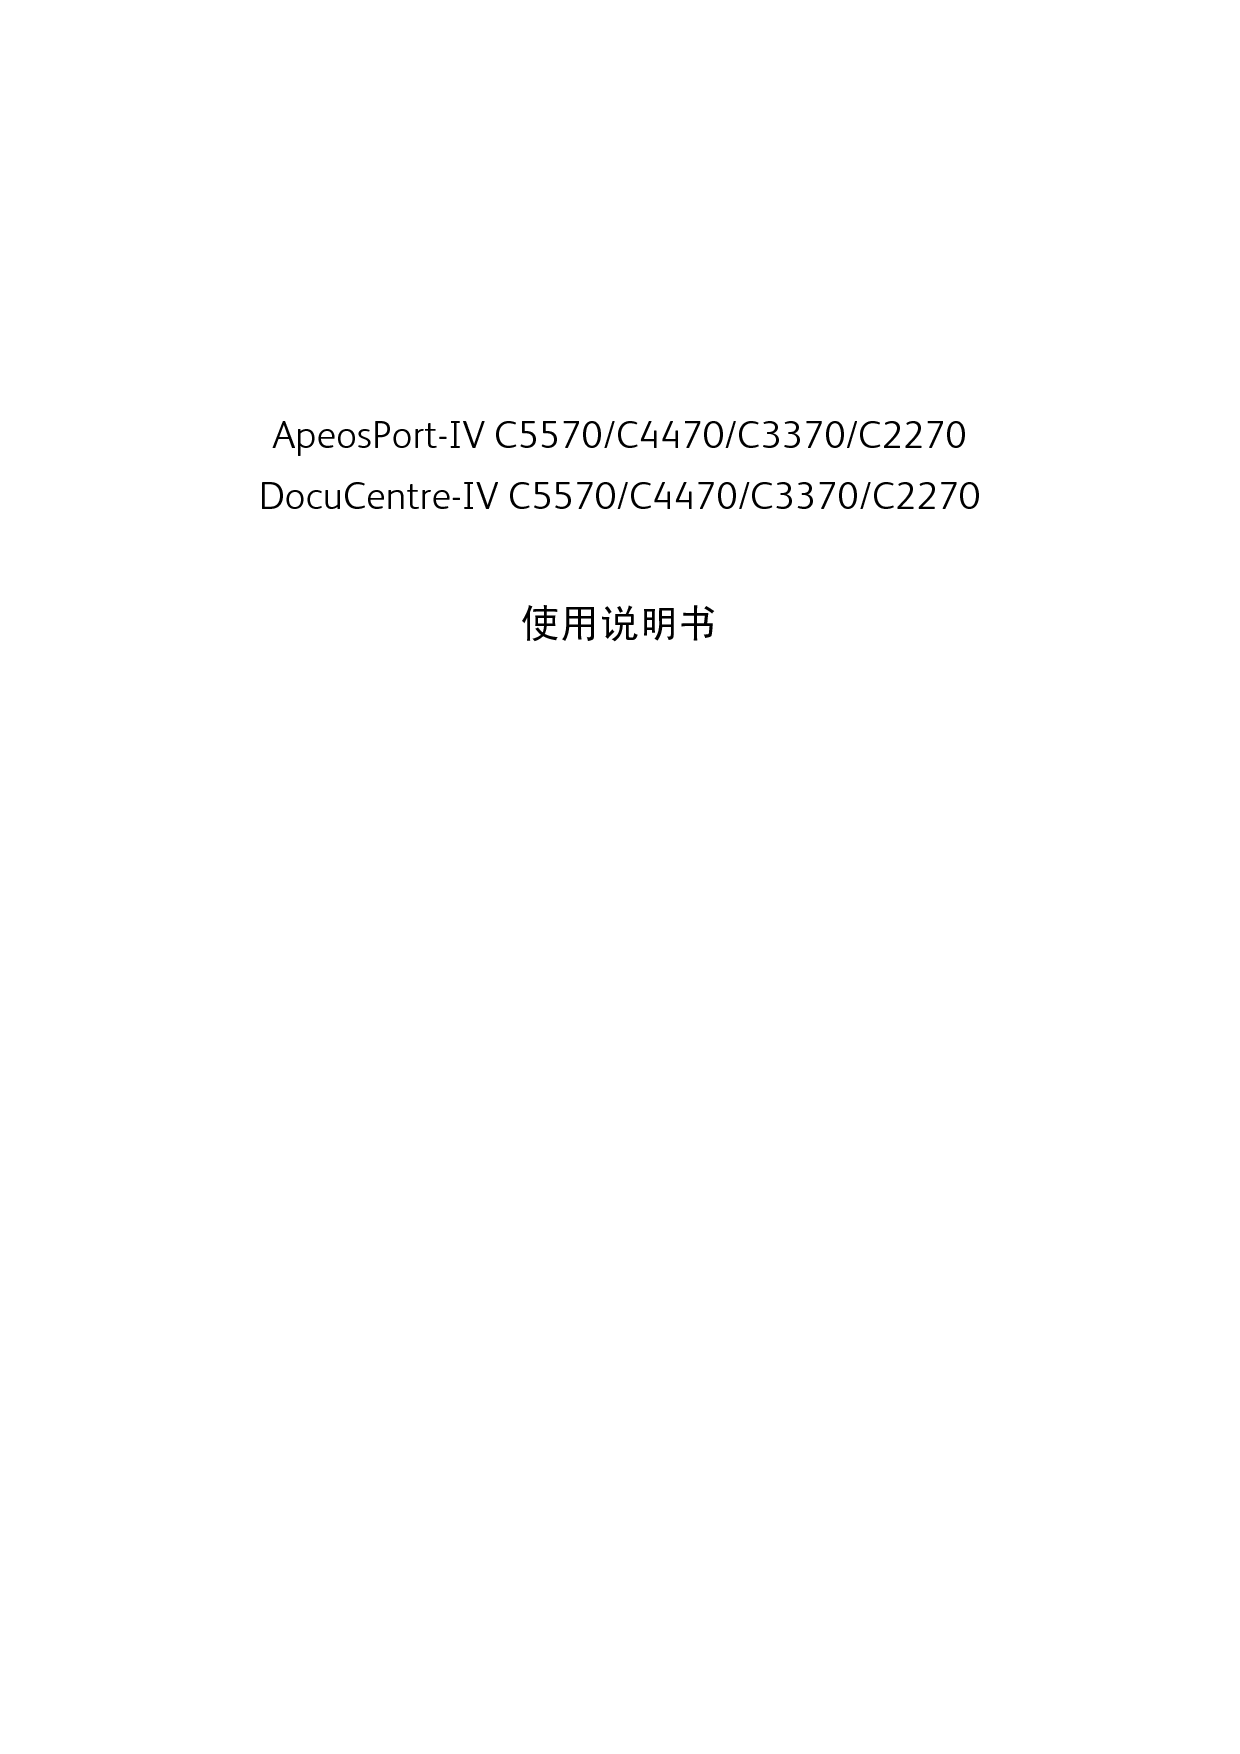 富士施乐 Fuji Xerox ApeosPort-IV C2270, DocuCentre-IV C2270 使用说明书 封面